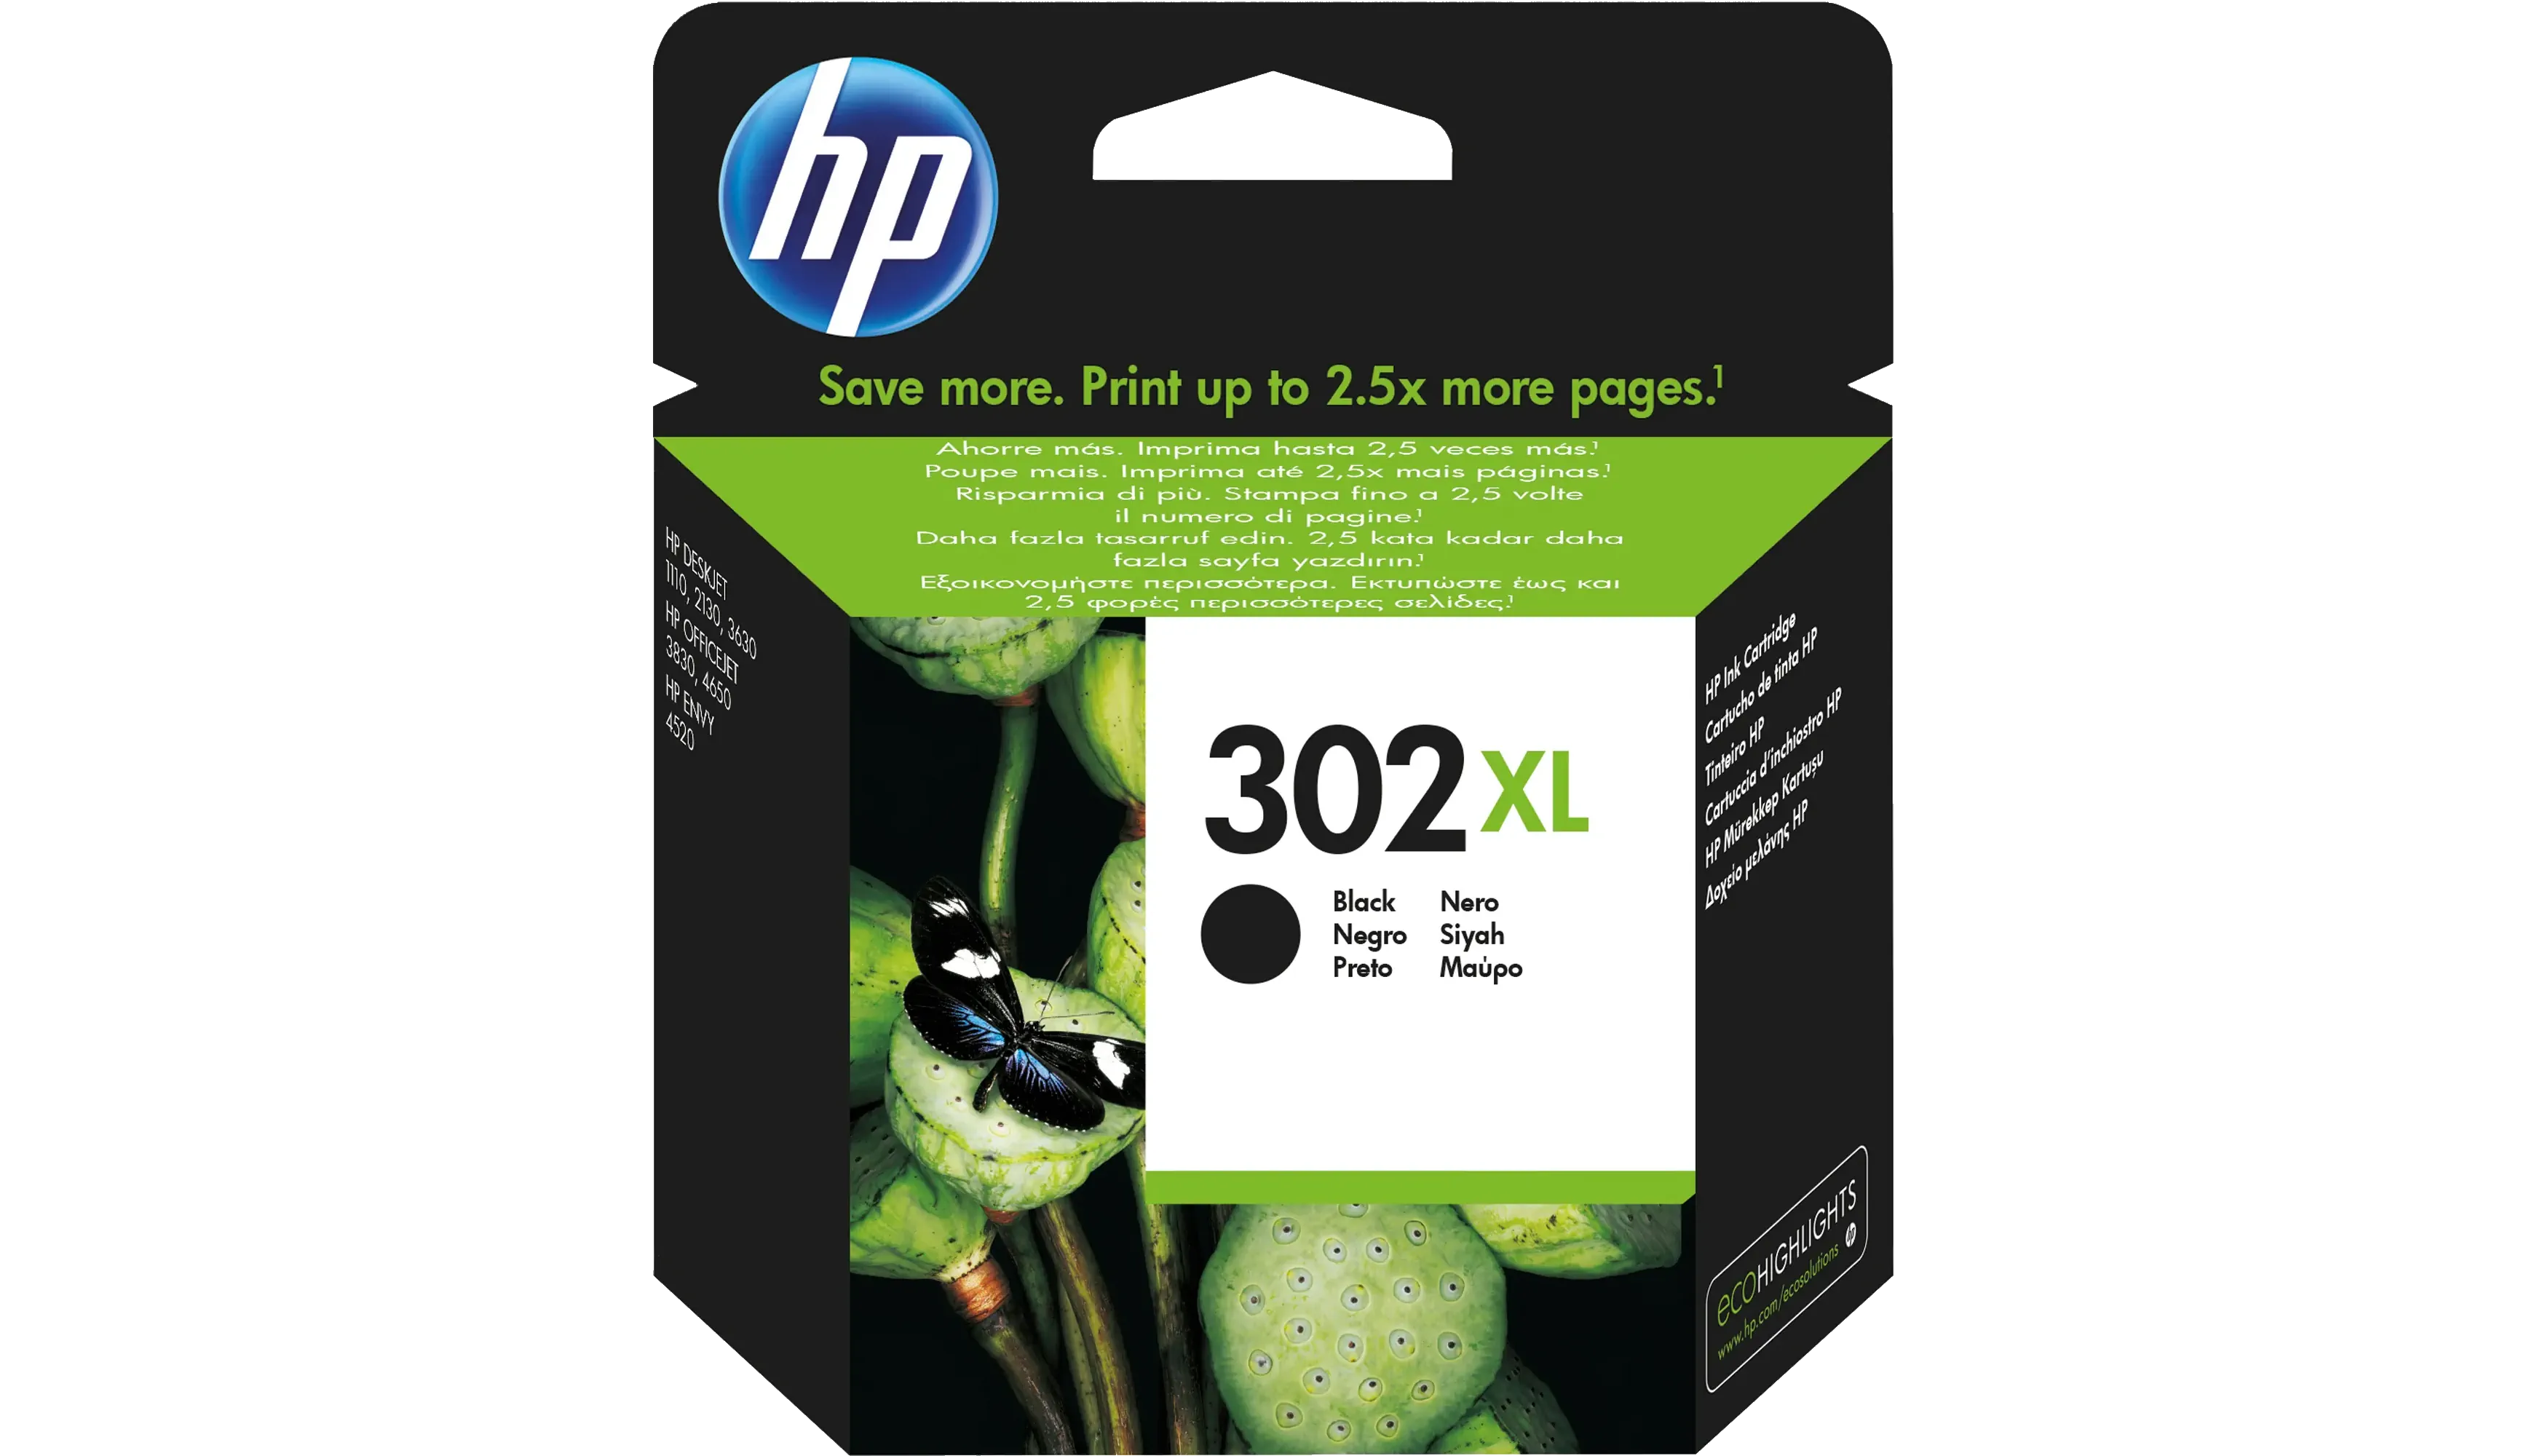 HP Tintenpatrone 302XL 430 Seiten schwarz  